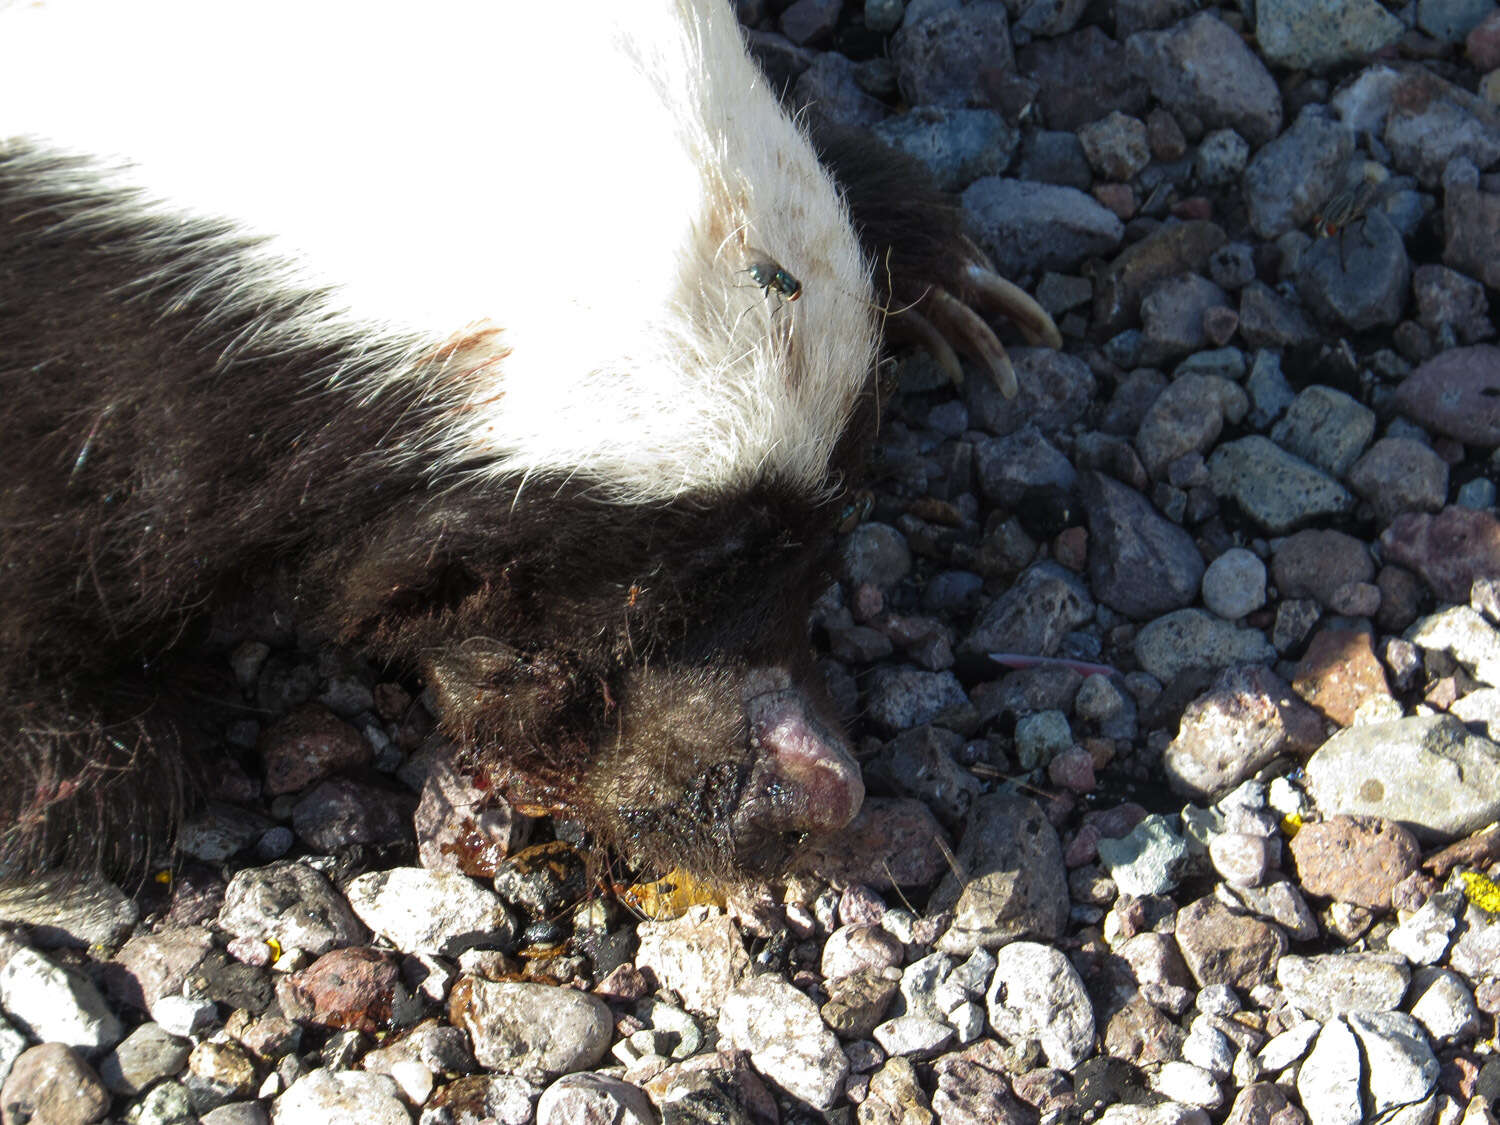 Image of American Hog-nosed Skunk